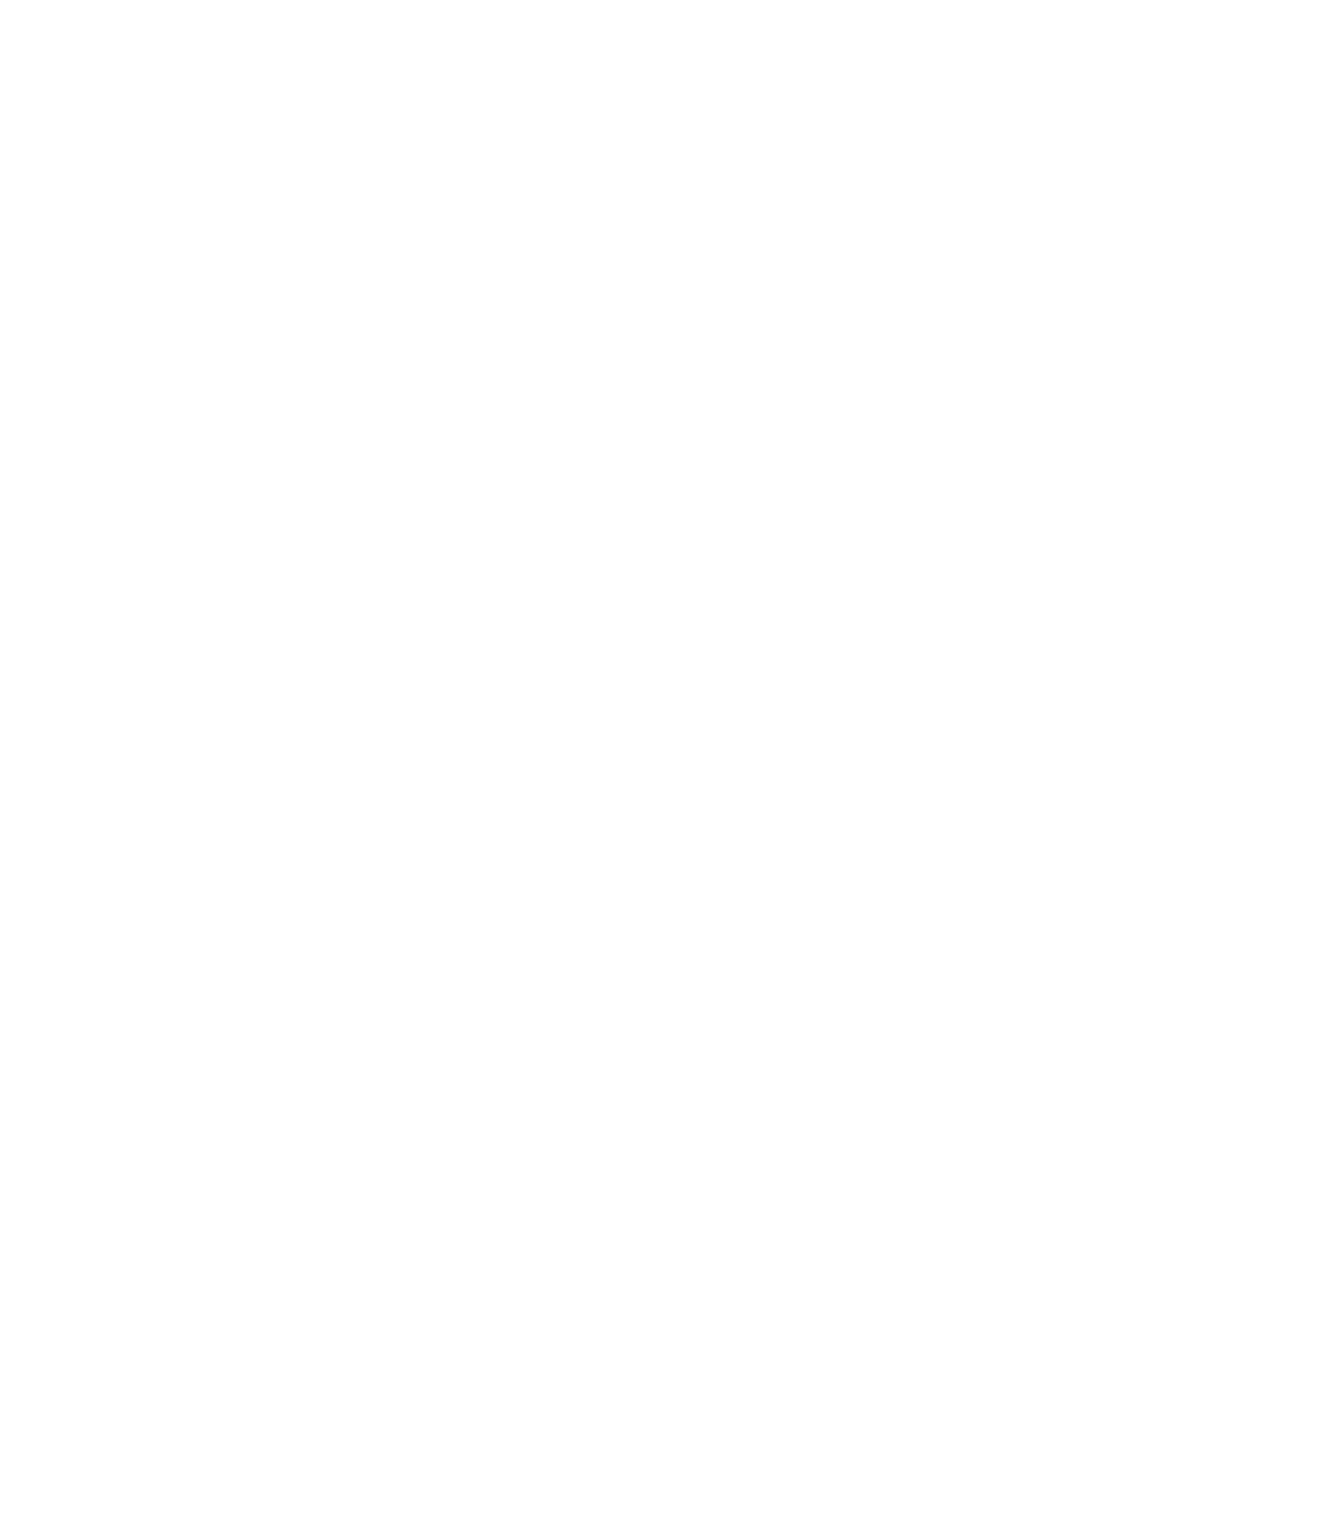 COPT Defense Properties logo for dark backgrounds (transparent PNG)